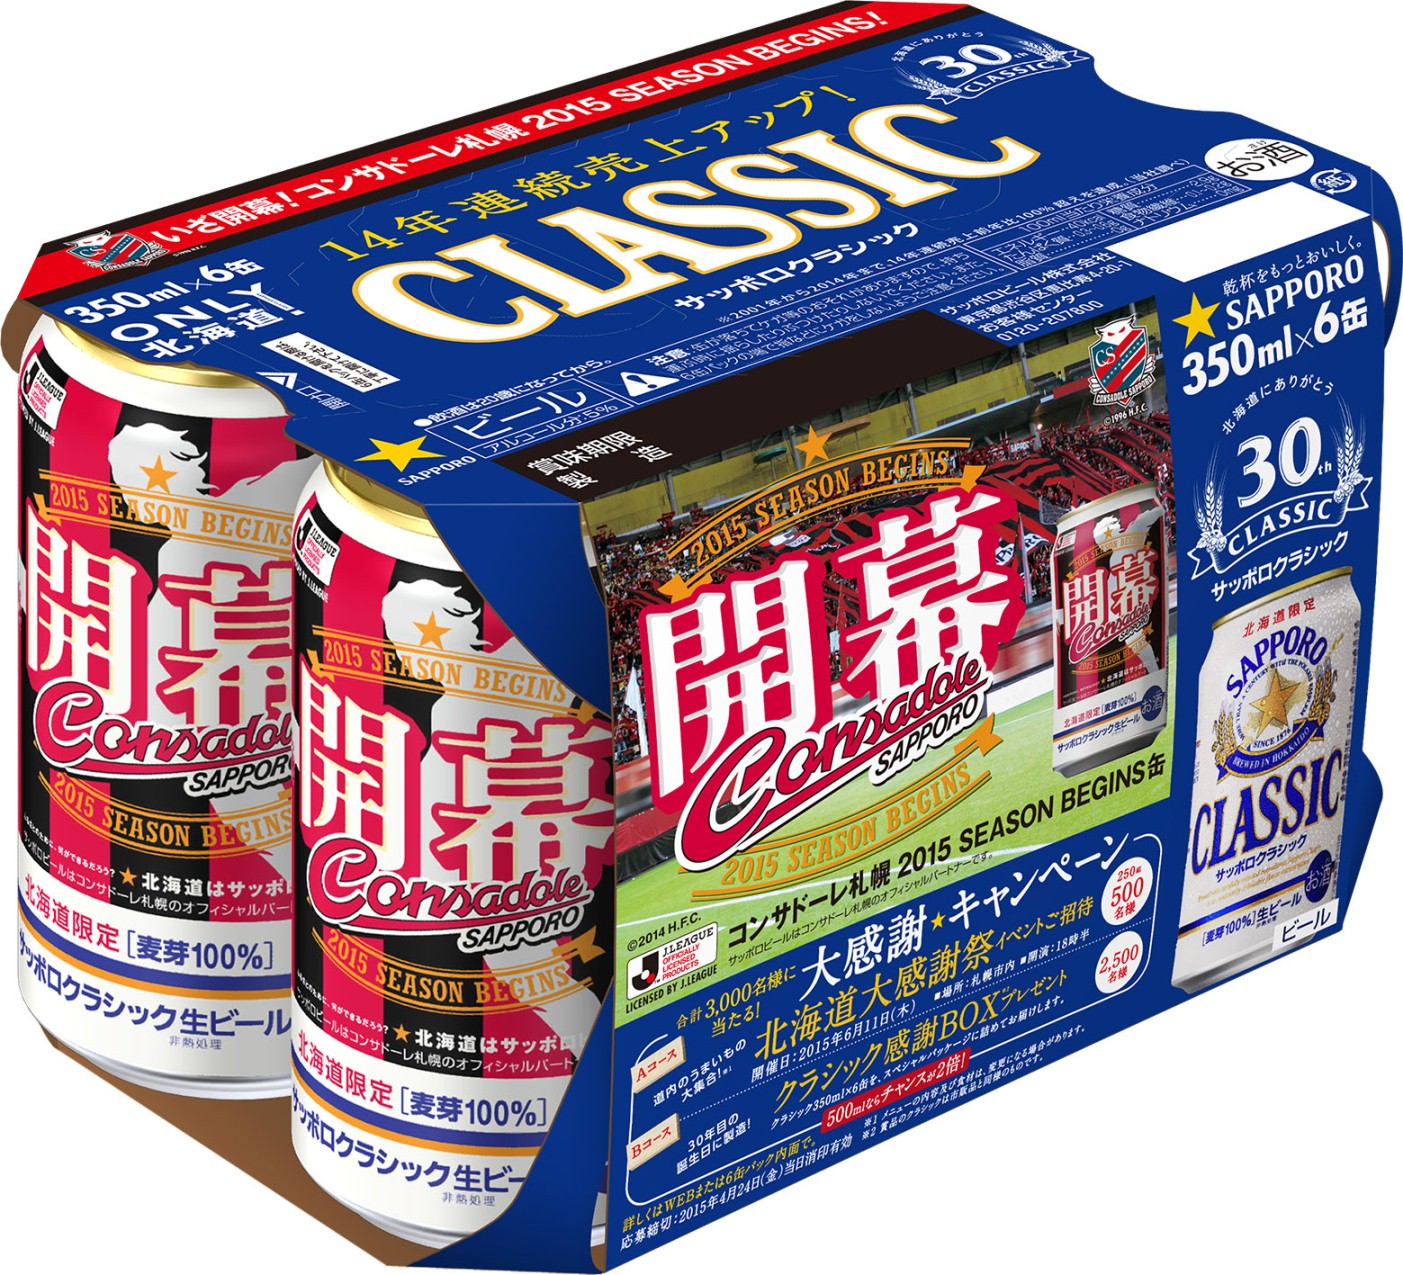 サッポロ クラシック コンサドーレ札幌 ２０１５ ｓｅａｓｏｎ ｂｅｇｉｎｓ缶 限定発売 ニュースリリース サッポロビール